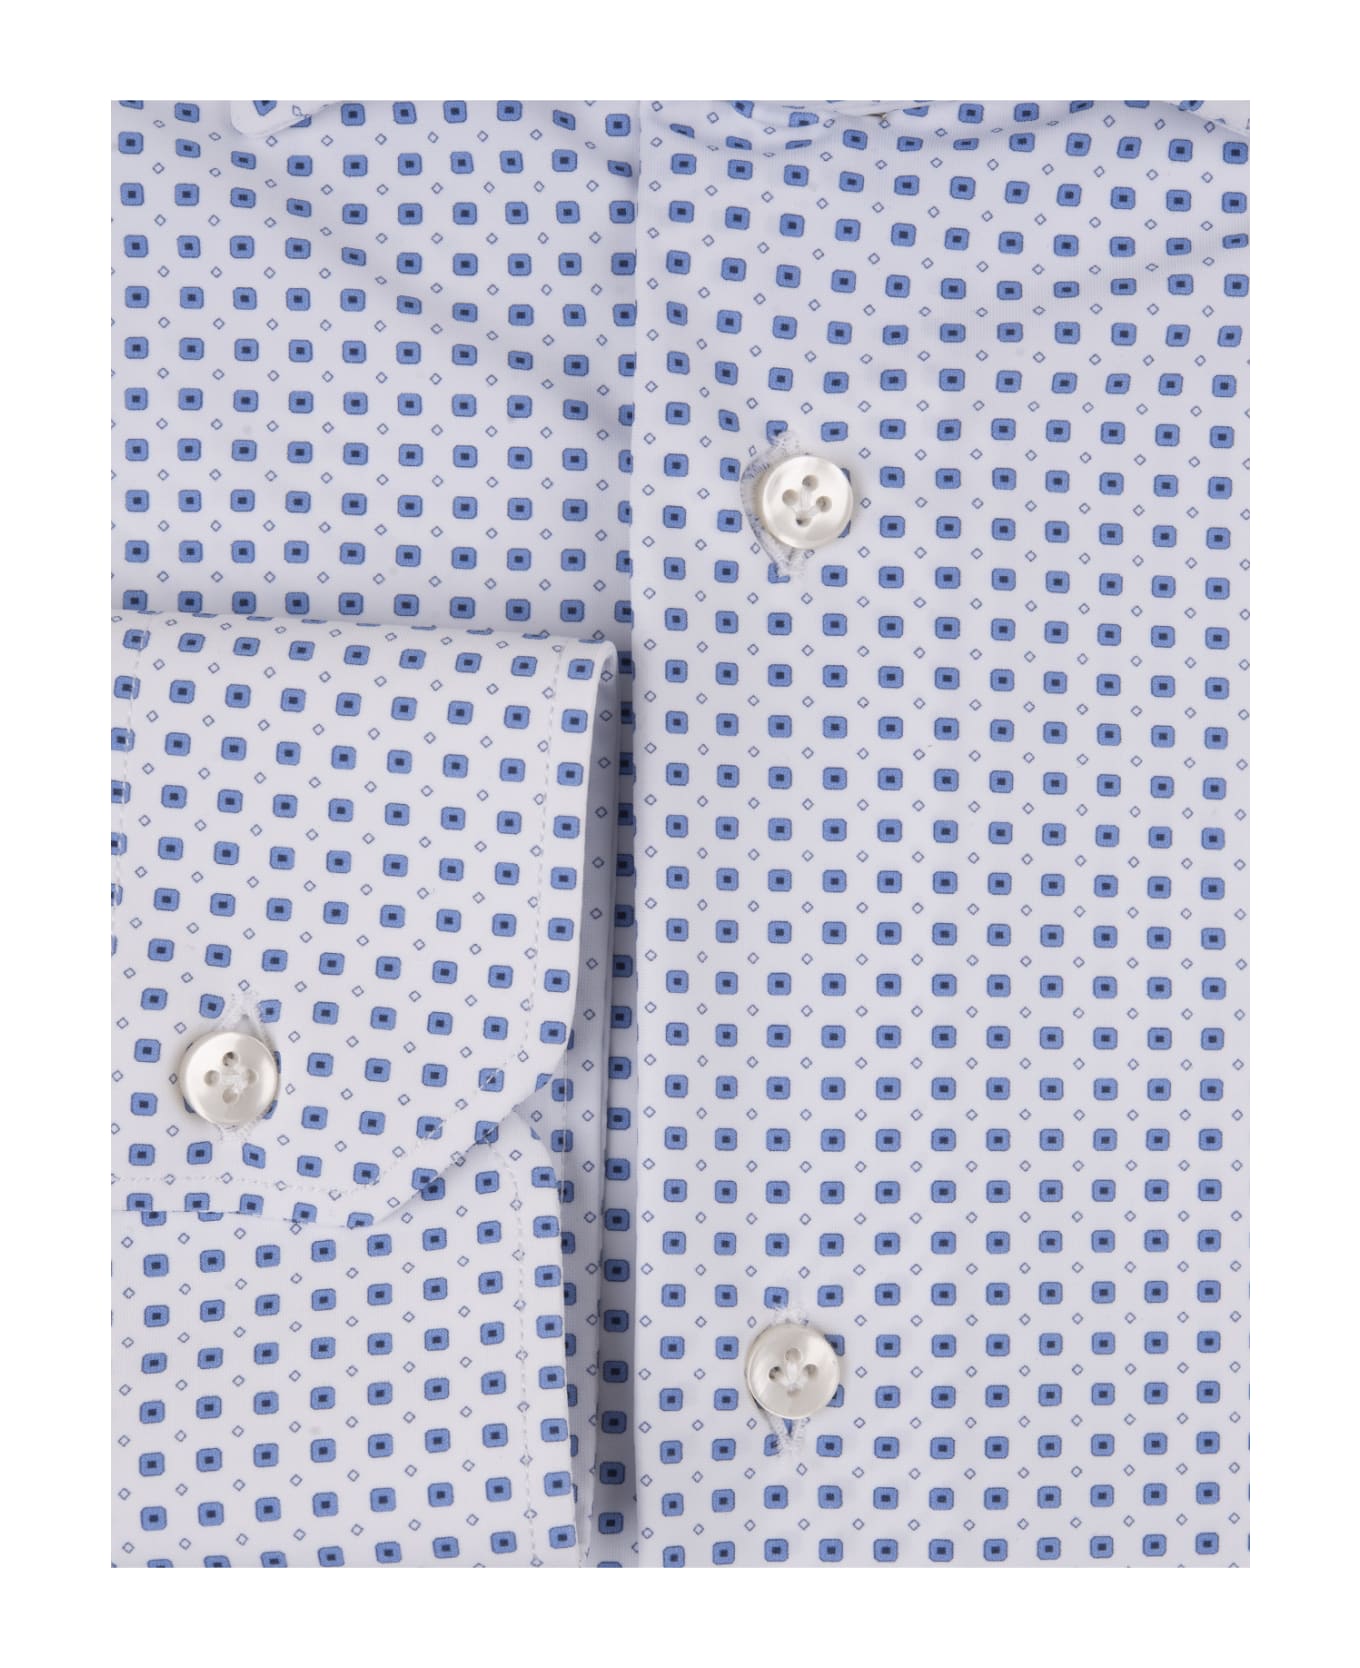 Sartorio Napoli White Shirt With Blue Micro Pattern - White